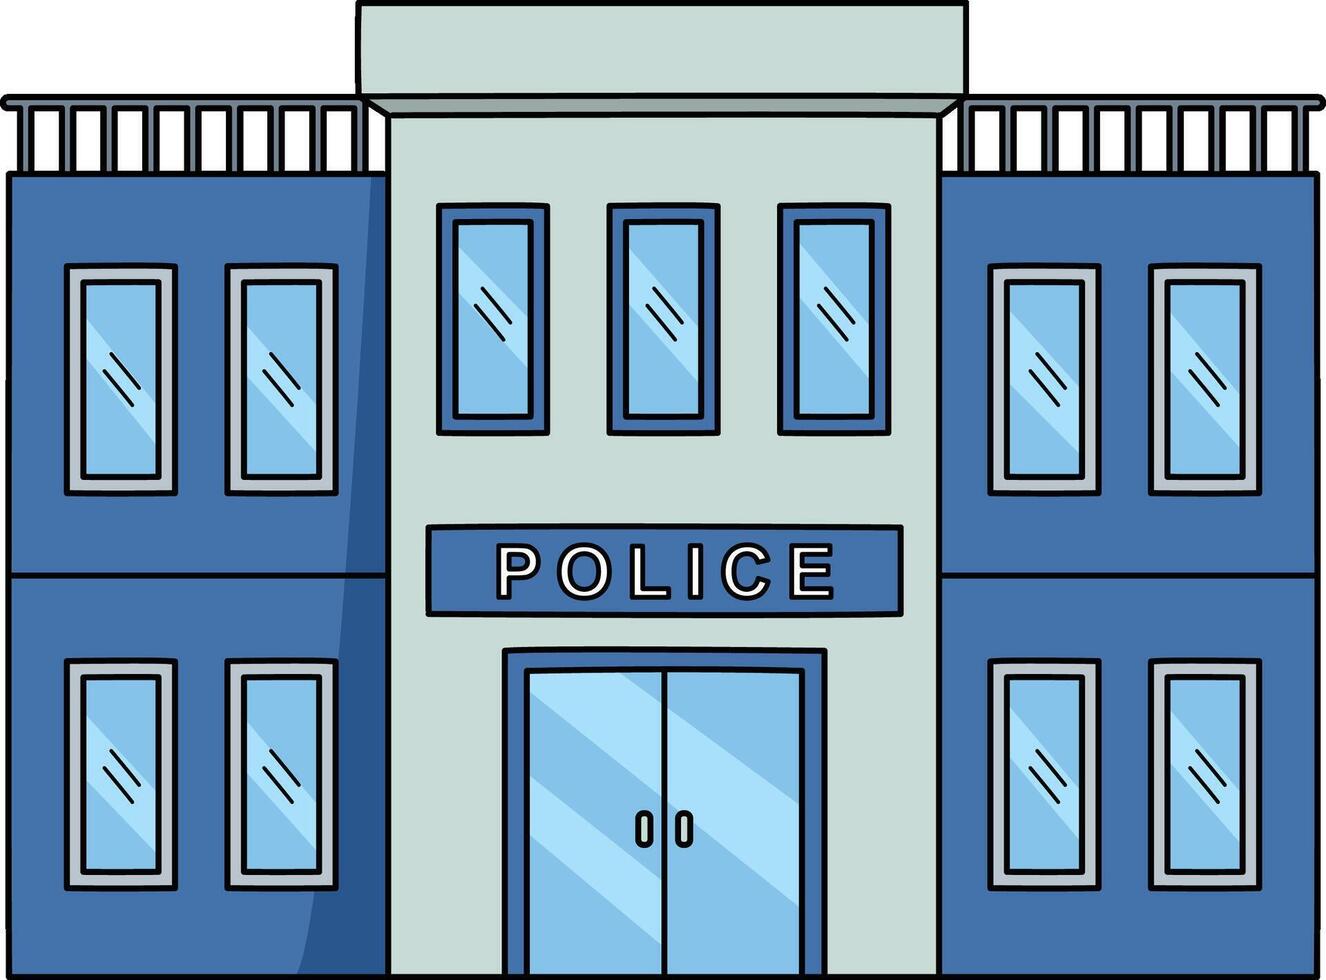 polizia stazione cartone animato colorato clipart vettore